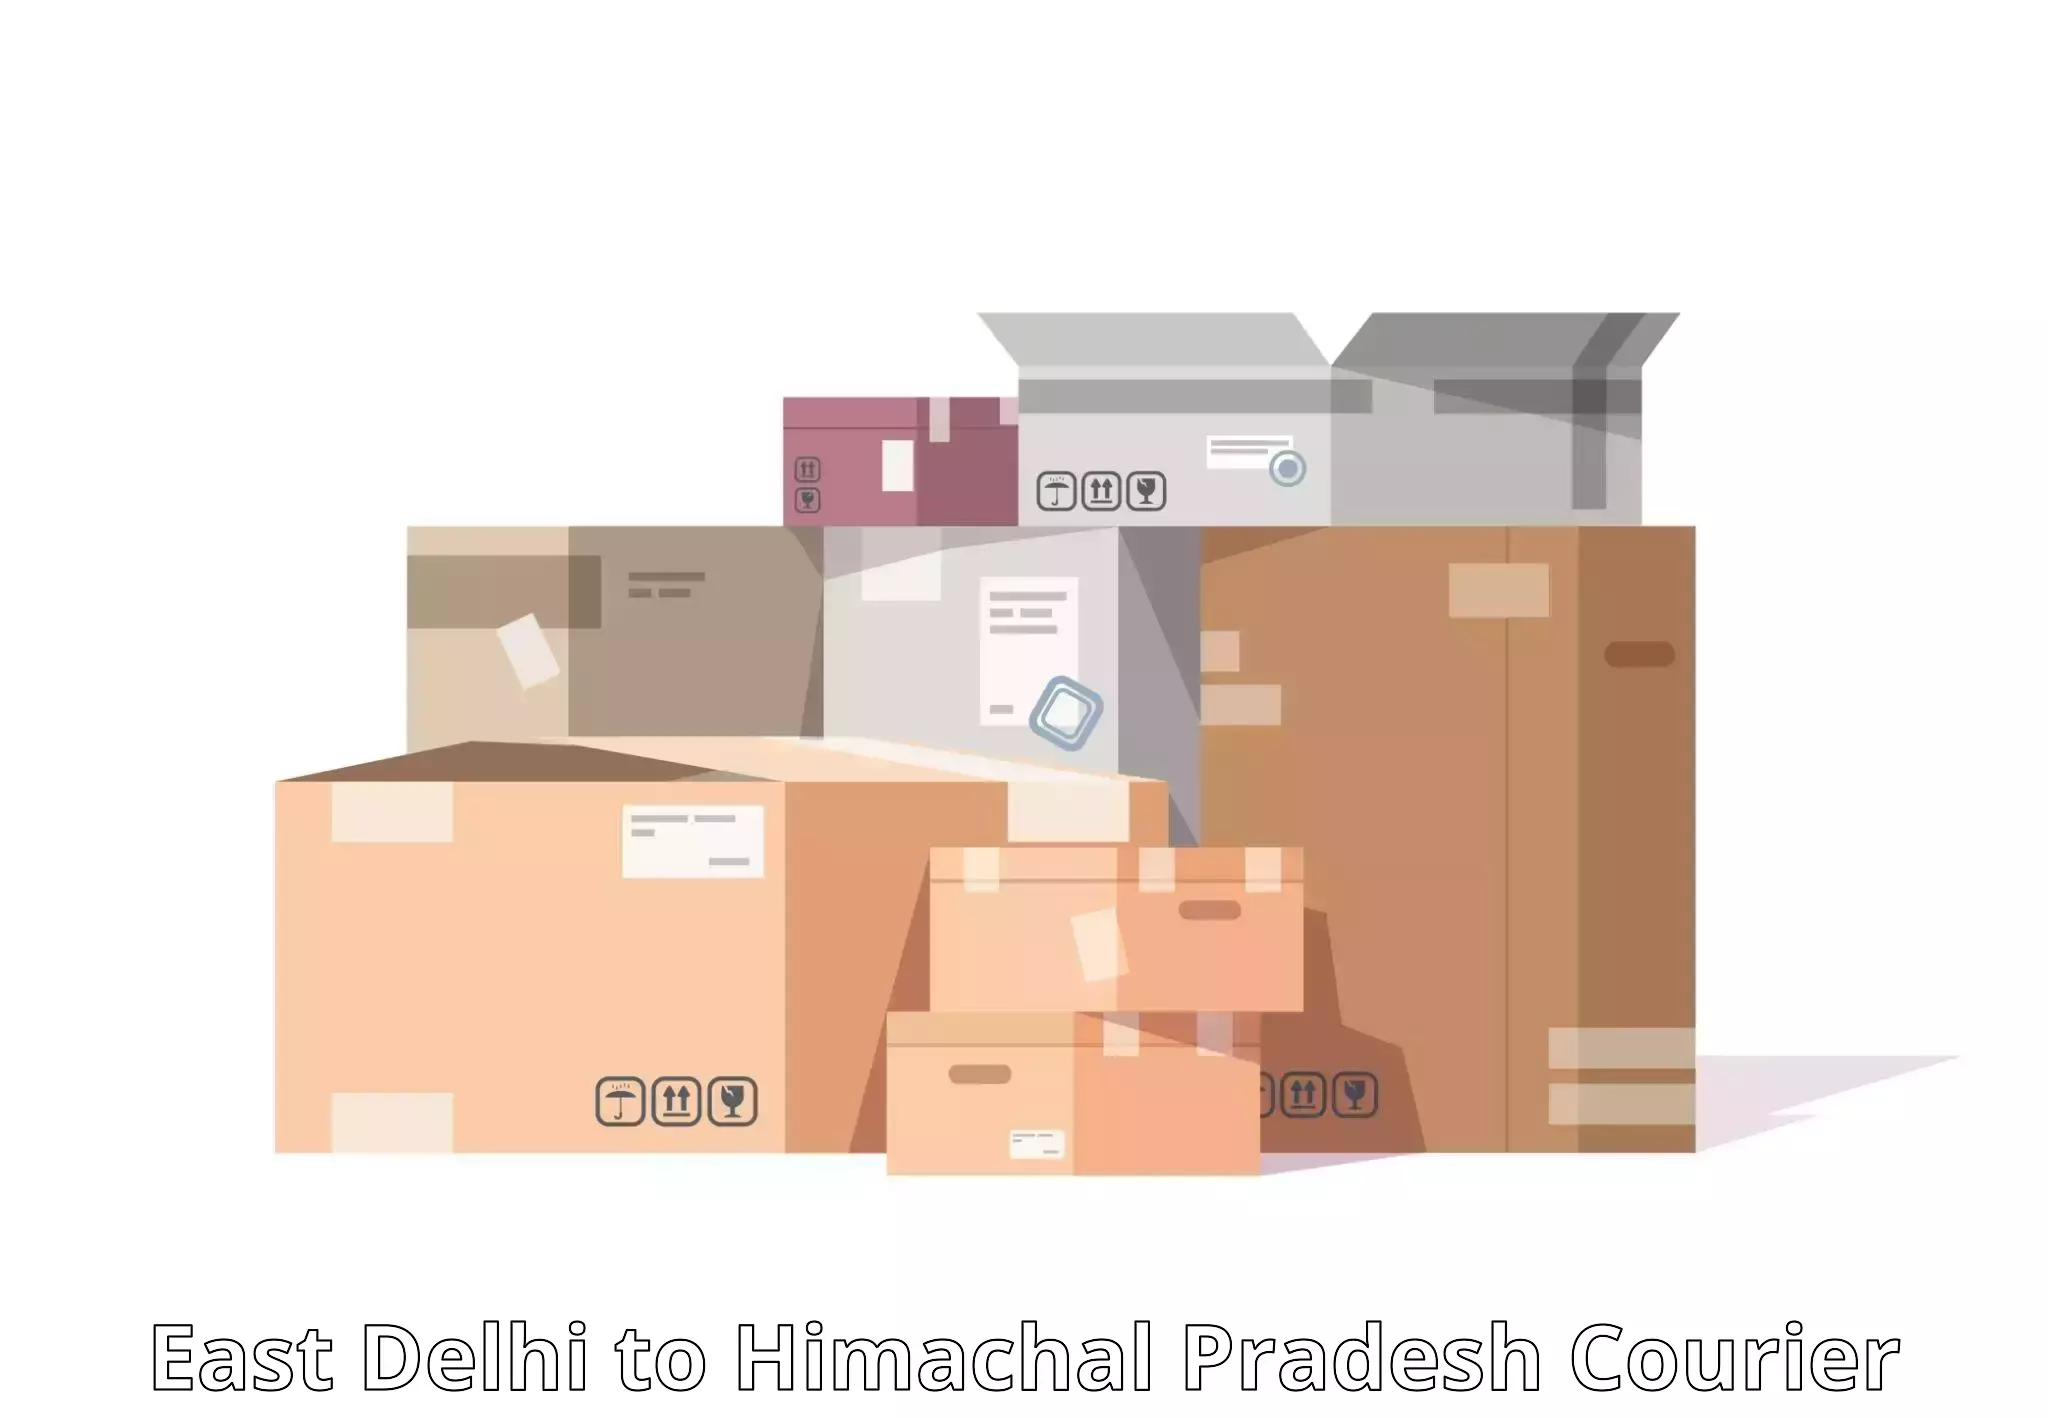 Logistics service provider East Delhi to Jukhala